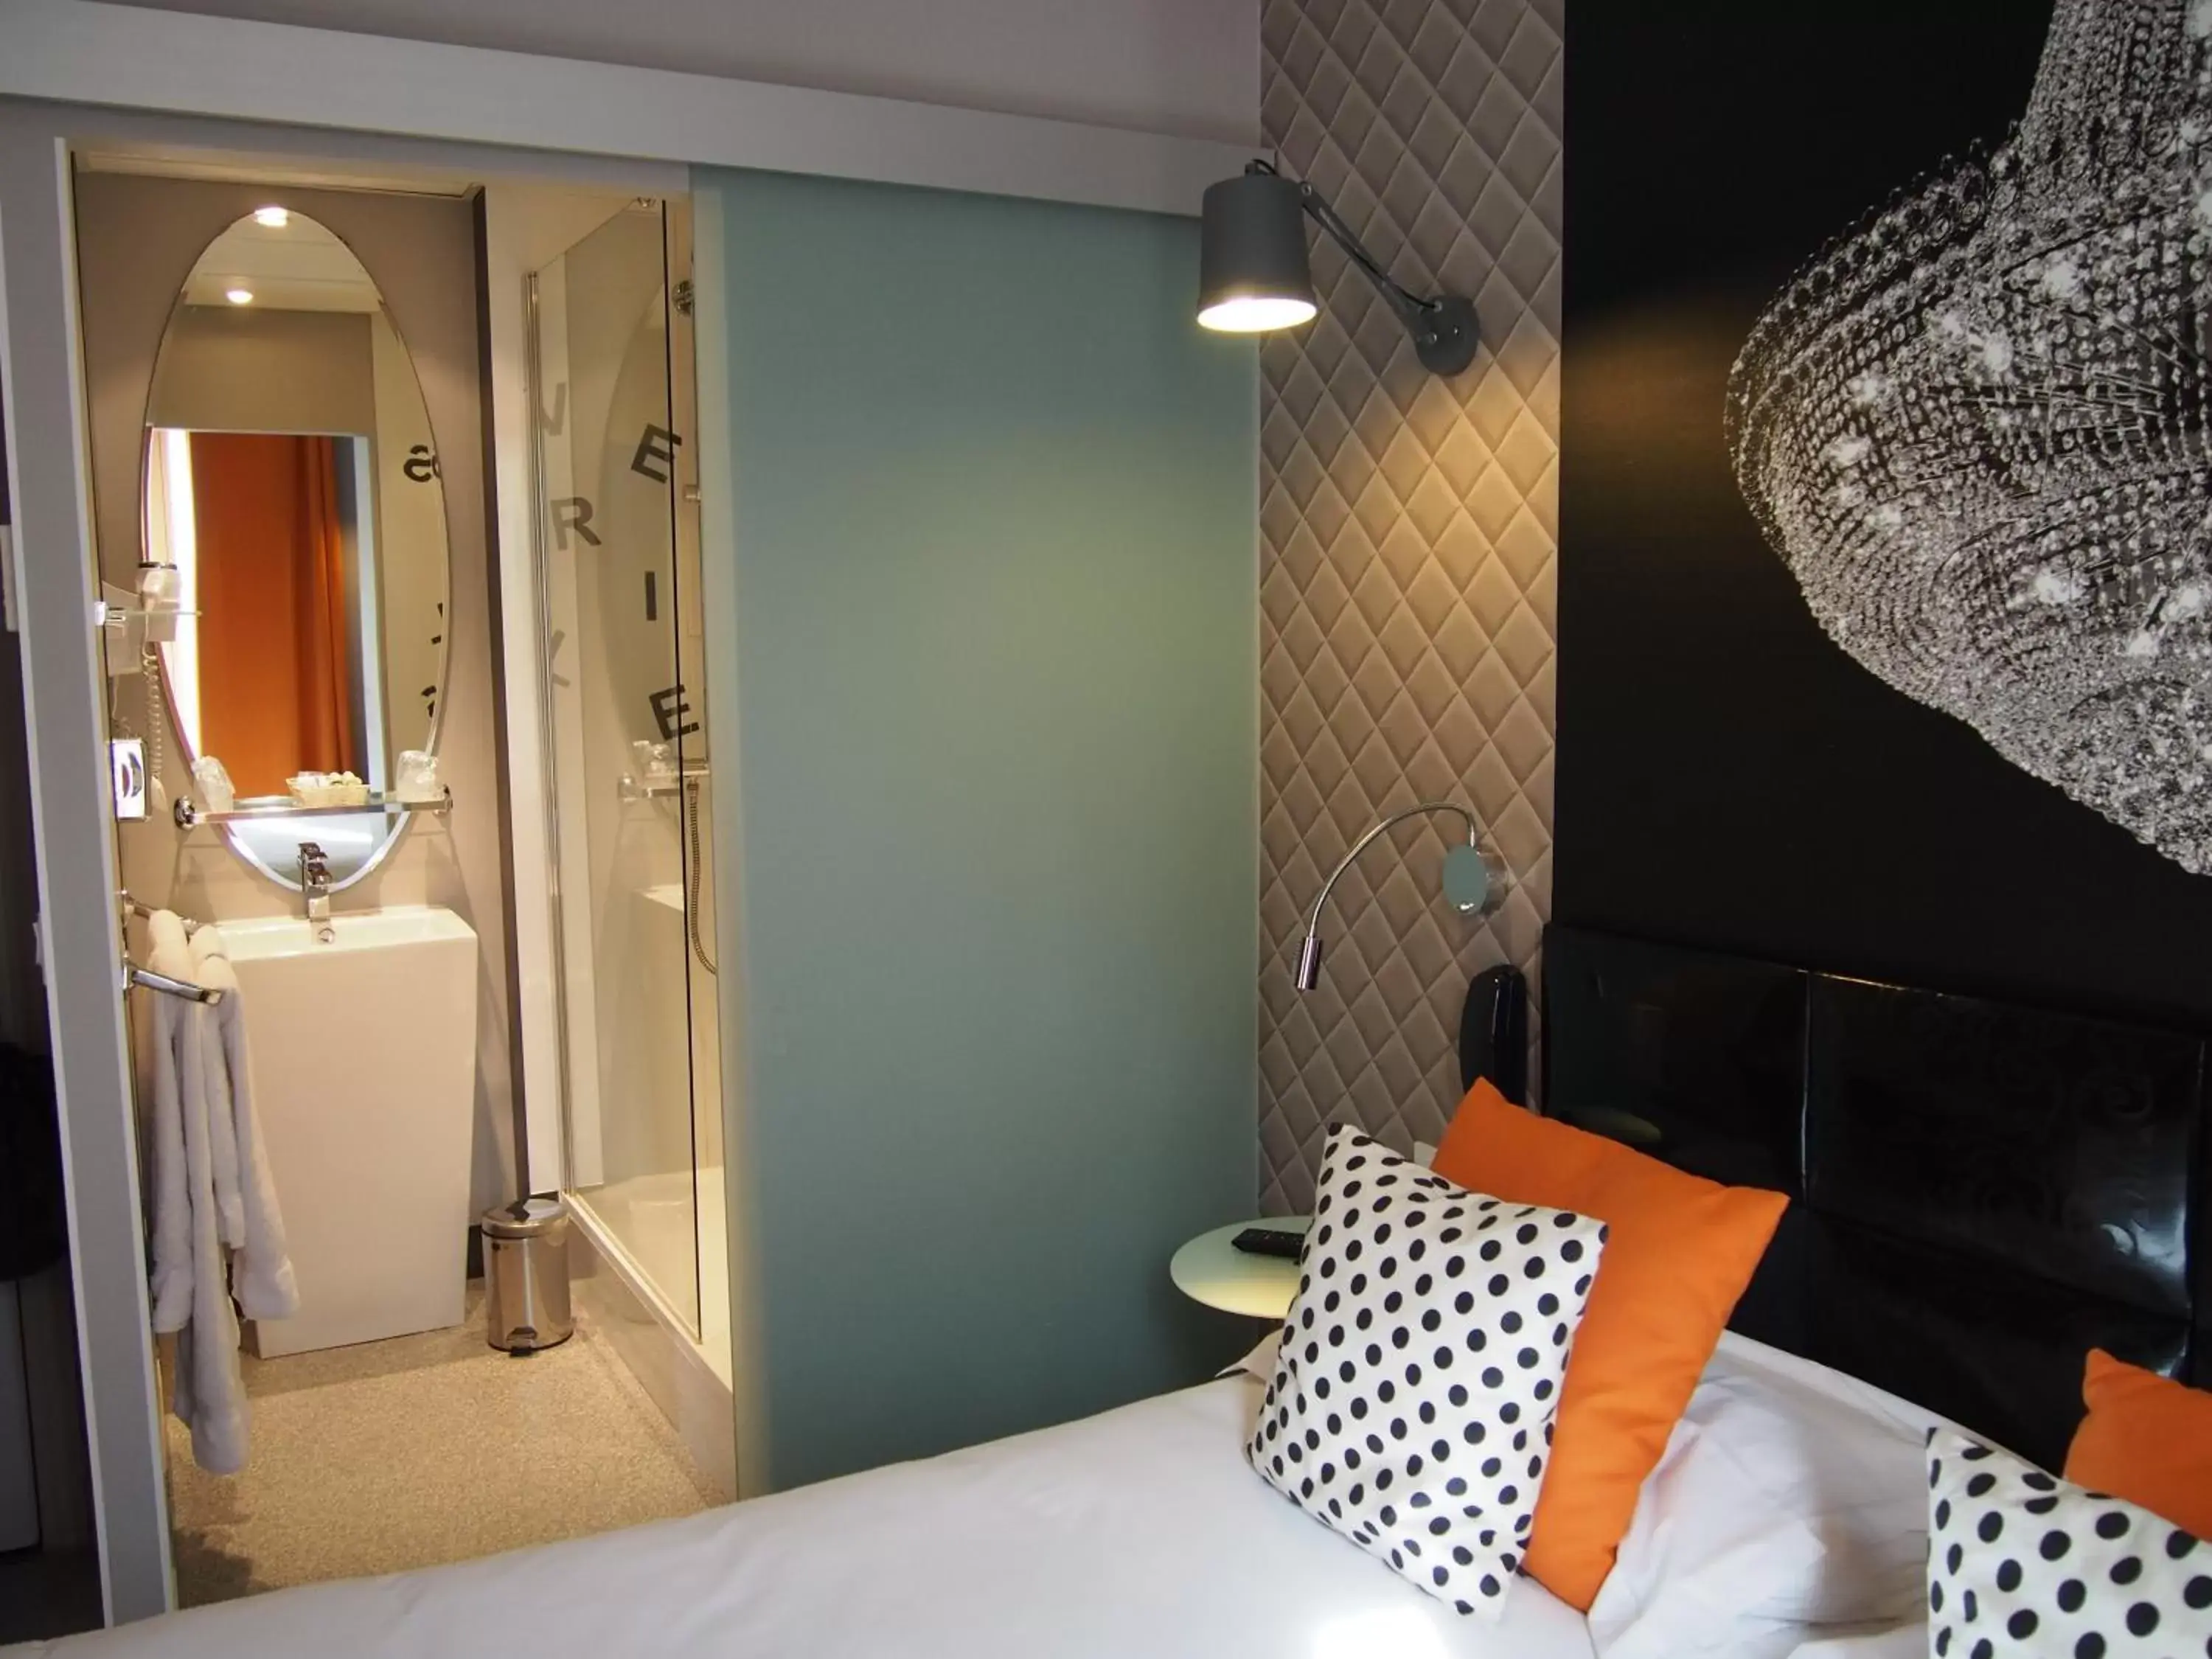 Photo of the whole room, Bathroom in Porte de Versailles Hotel